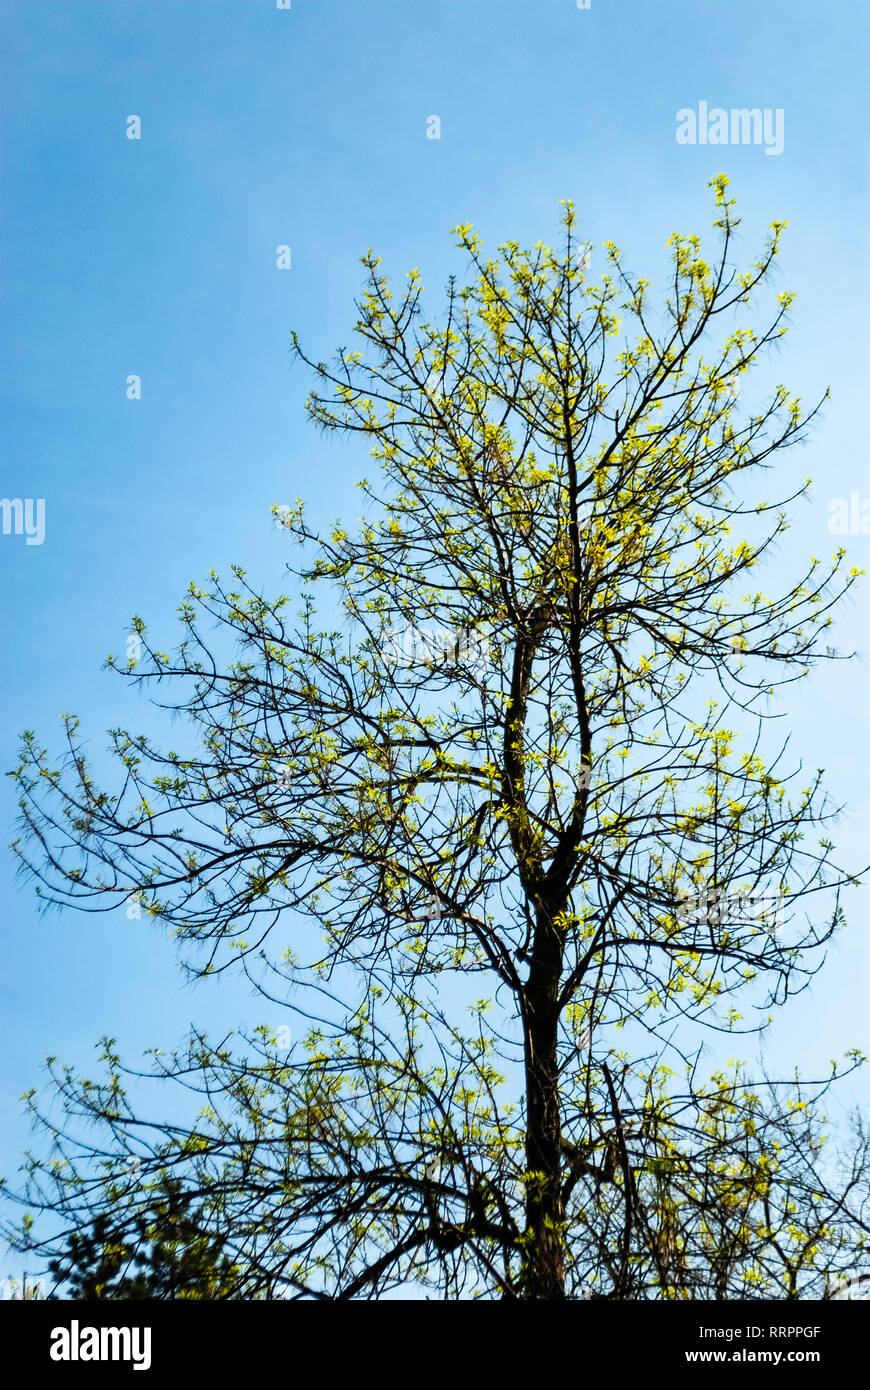 Blooming Tree Frühling gegen den klaren blauen Himmel - Start des neuen Lebens Konzept - Erwachen und Erweckung Konzept Stockfoto